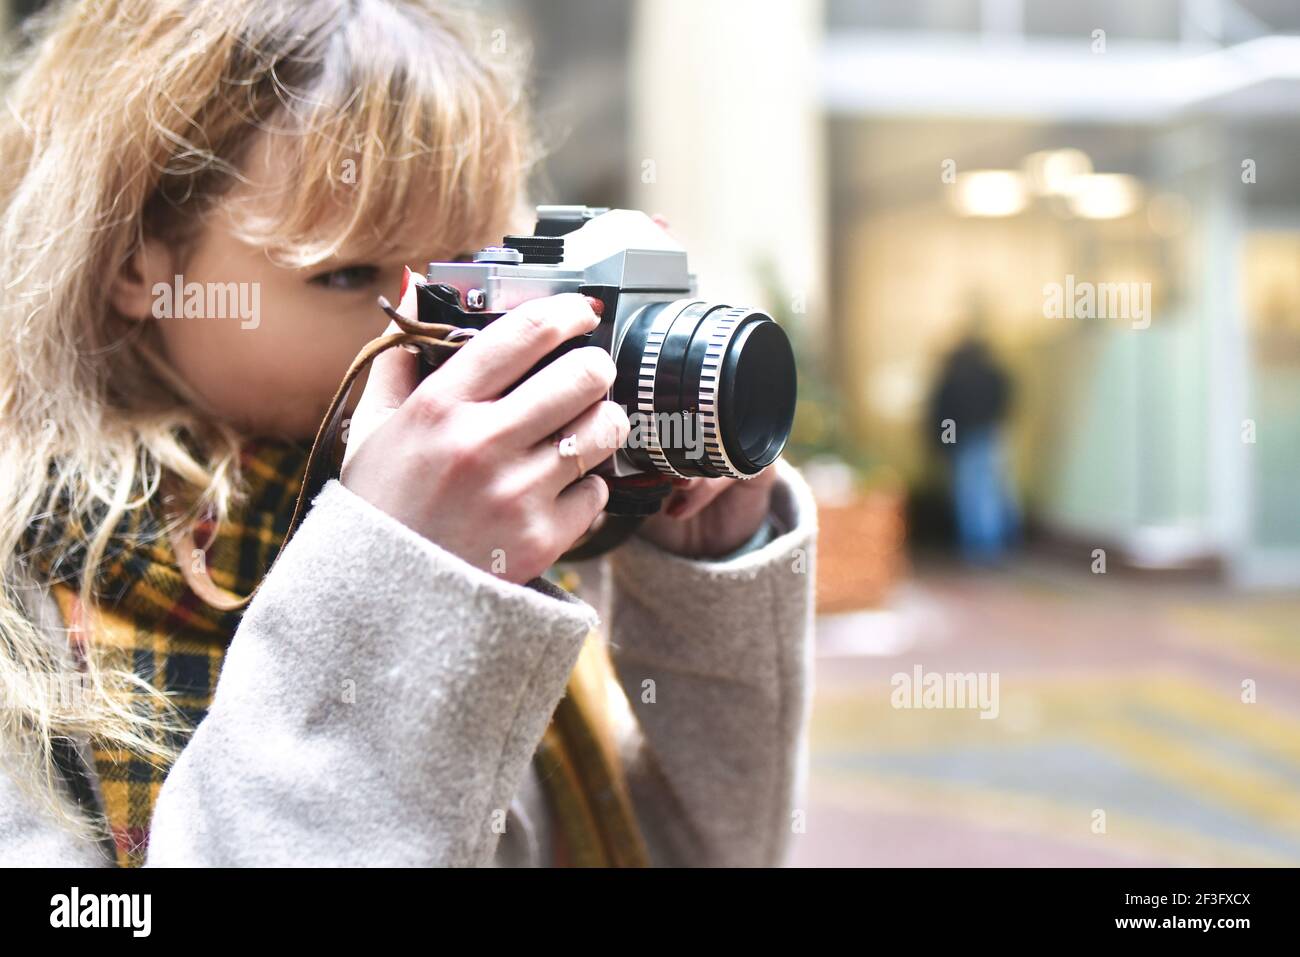 Rubia bonita fotógrafa mujer con cámara retro en sus manos mientras toma fotos en la antigua arquitectura urbana. Descubre nuevos lugares. Foto de stock